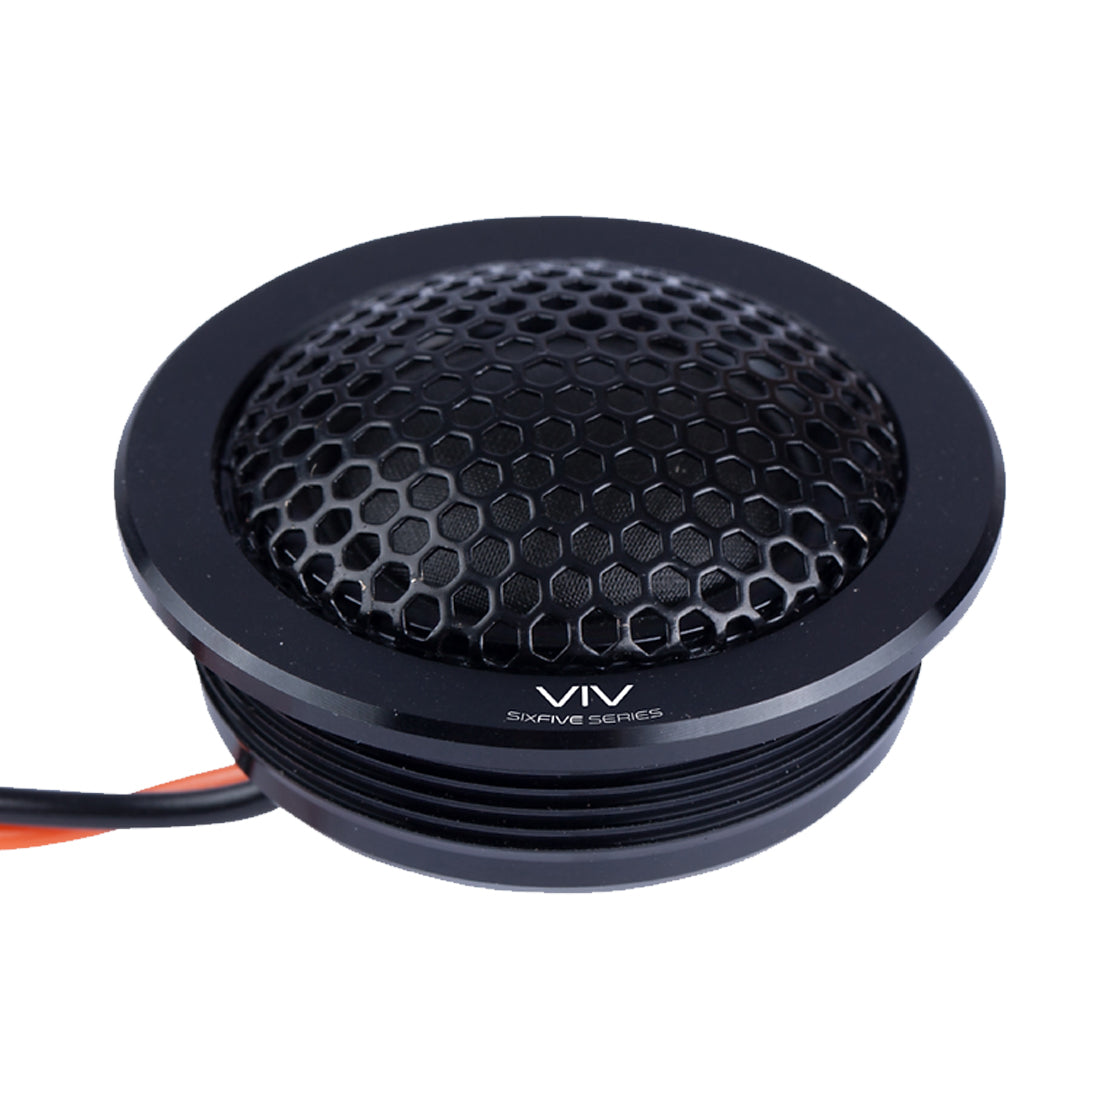 Memphis Audio VIV60CV2 6.5" 80W Component Speaker Set